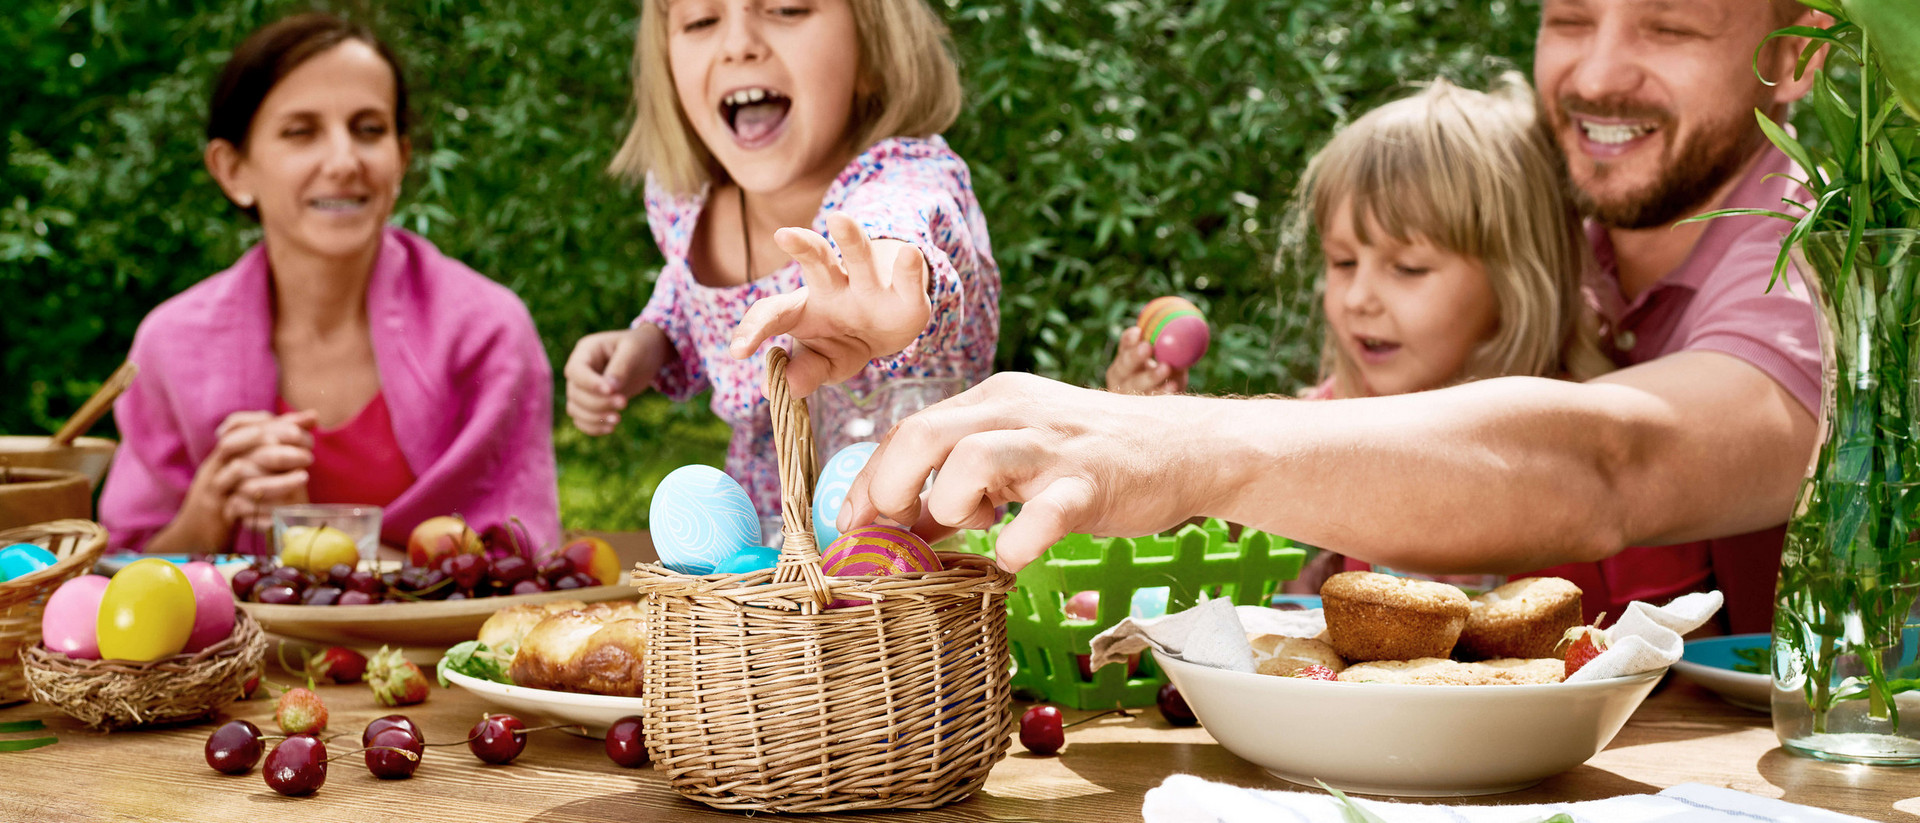 Ein Mann, eine Frau und zwei Mädchen sitzen an einem Holztisch. Der Mann und eines der Mädchen greifen nach bunt angemalten Eiern, die in einem Körbchen auf dem Tisch stehen. Das zweite Mädchen hält ebenfalls ein bunt angemaltes Ei in der Hand, die Frau schaut zu und lacht. 